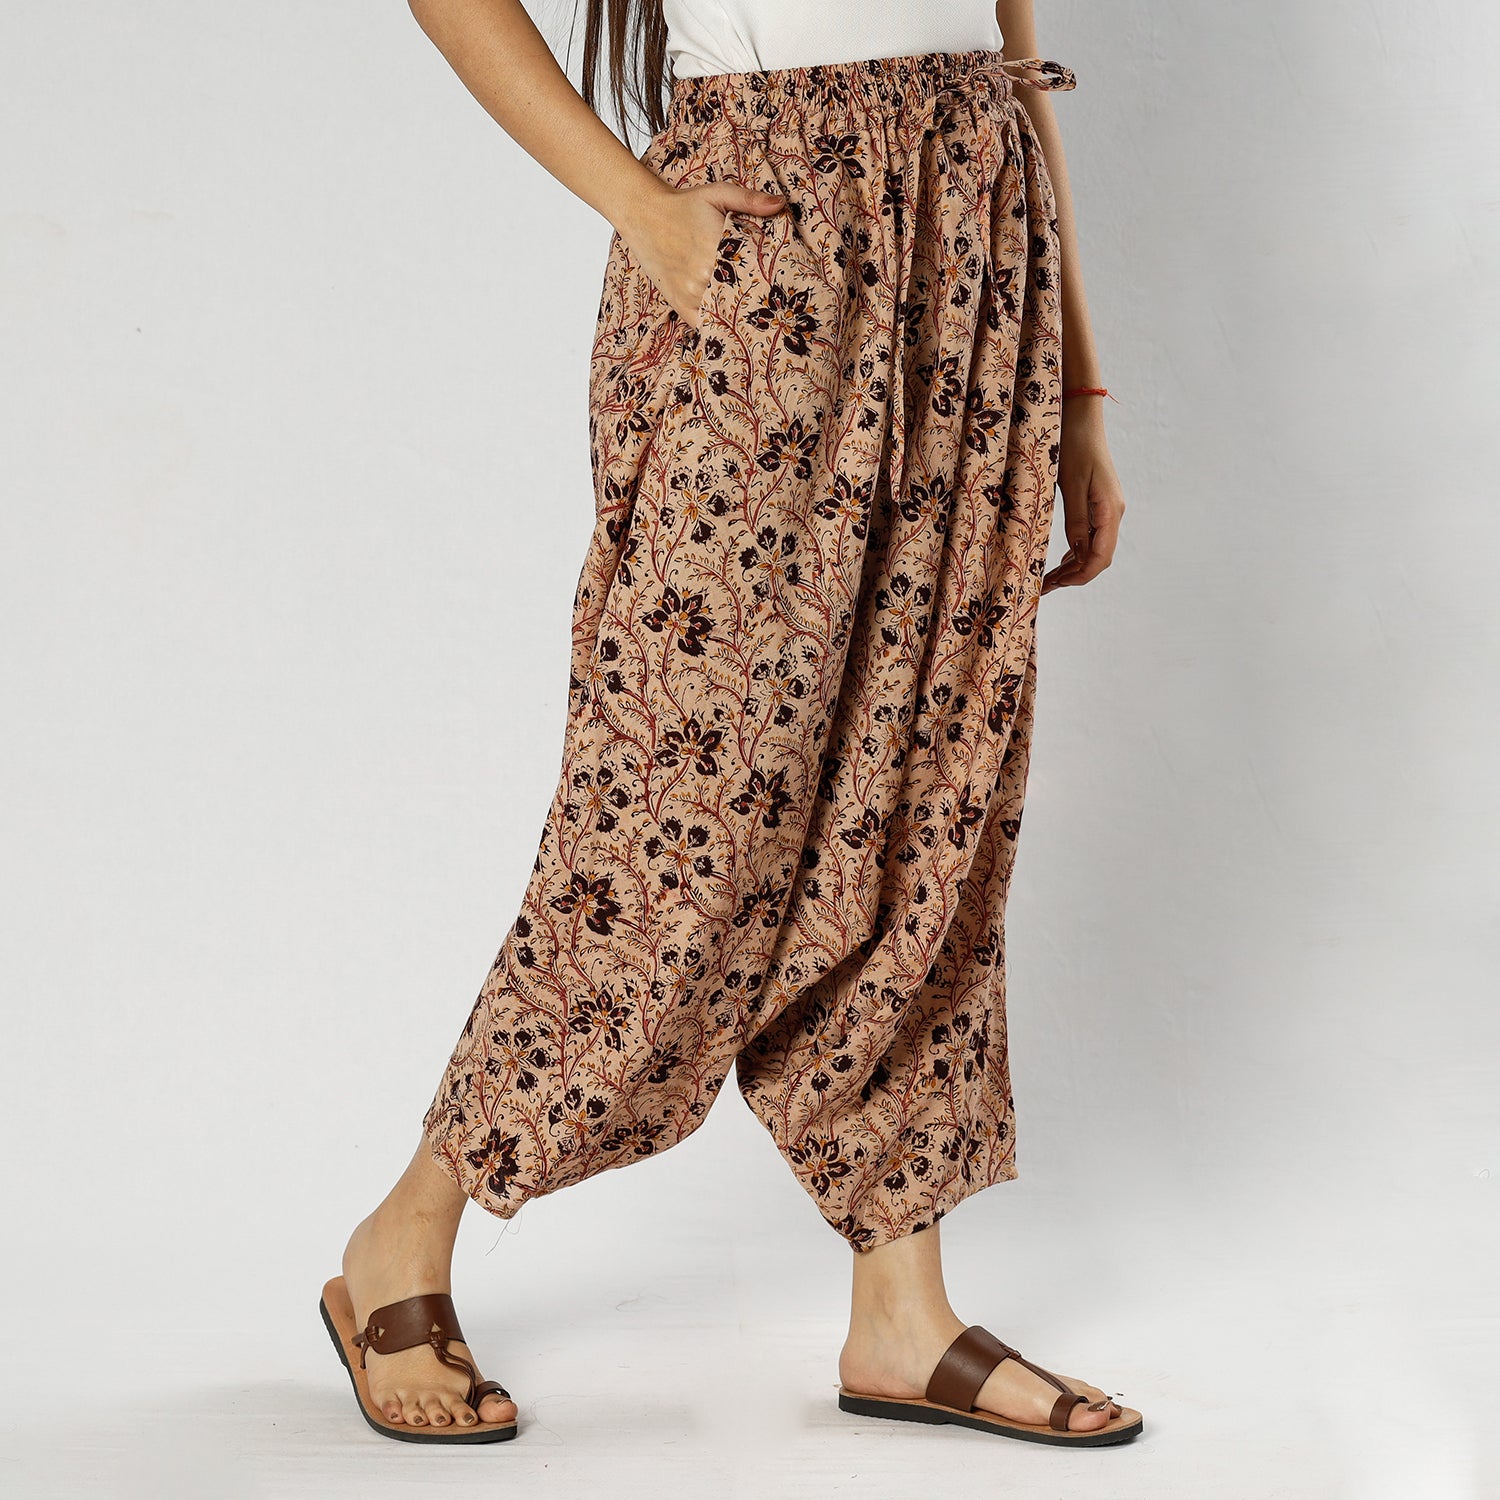 Ensemble modal cotton elasticated panelled kalamkari border skirt -1 - Shop  Online For Best Women's Clothing & Ethnic Wear